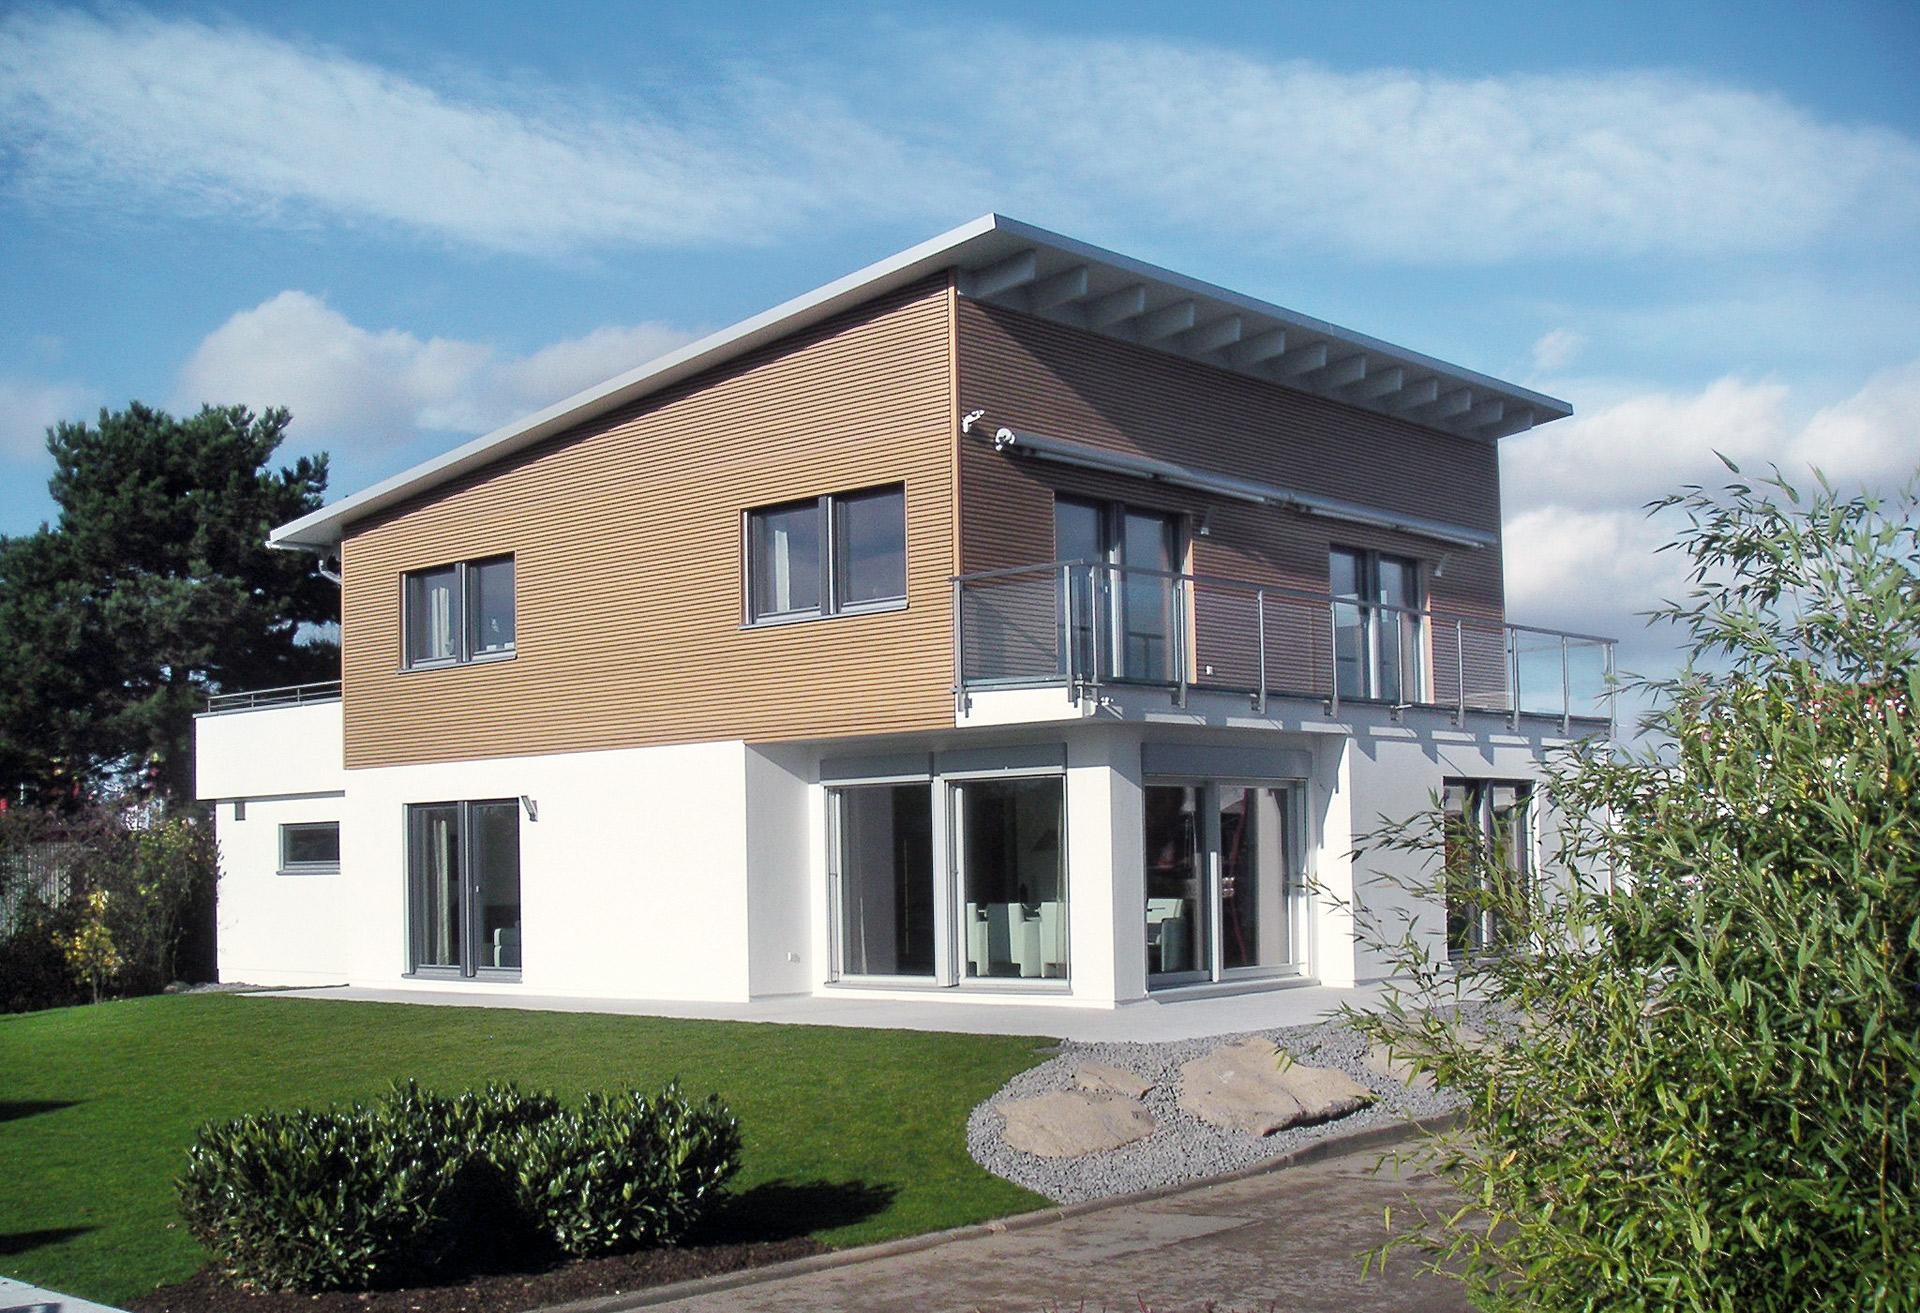 Casa unifamiliare in stile Bauhaus con tetto ad una falda